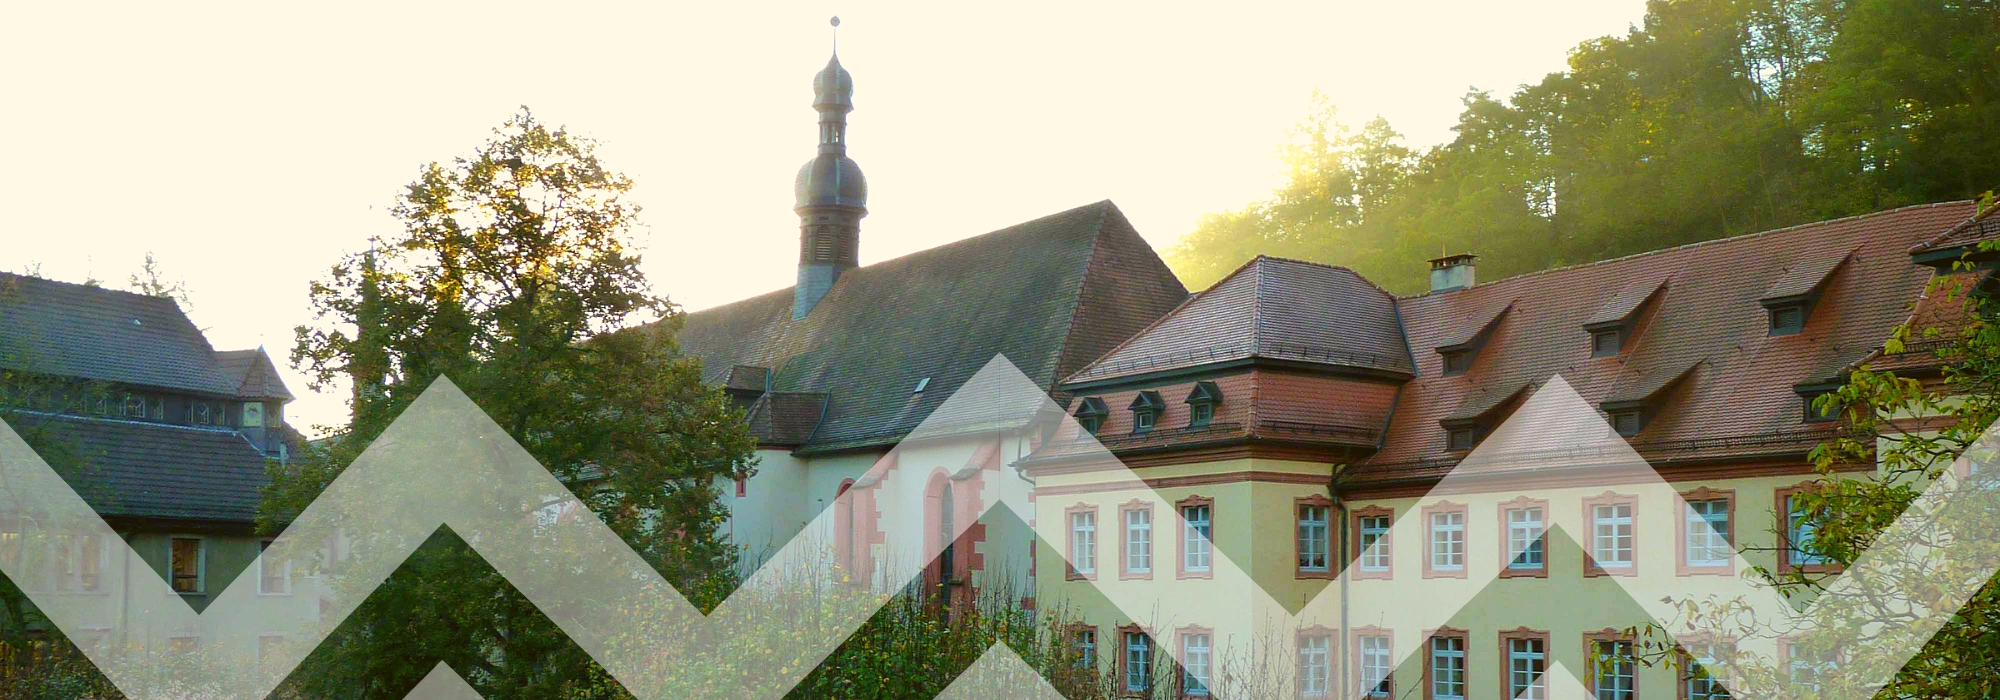 Frontalansicht des Klosters Lichtenthal